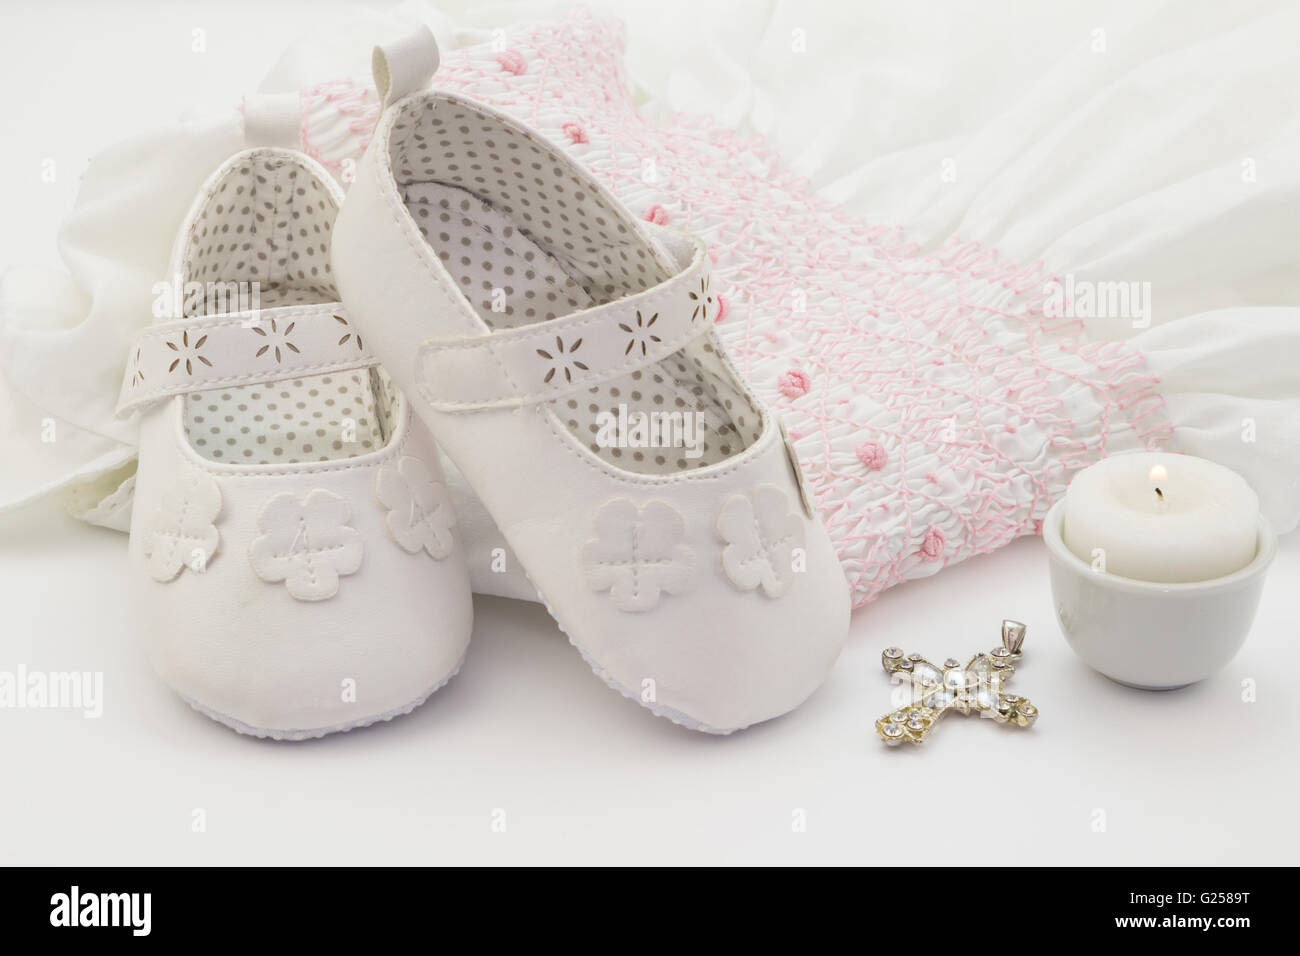 Weiße Baby Schuhe auf weißen bestickt Taufe Kleid, Kreuz und Kerze  Stockfotografie - Alamy